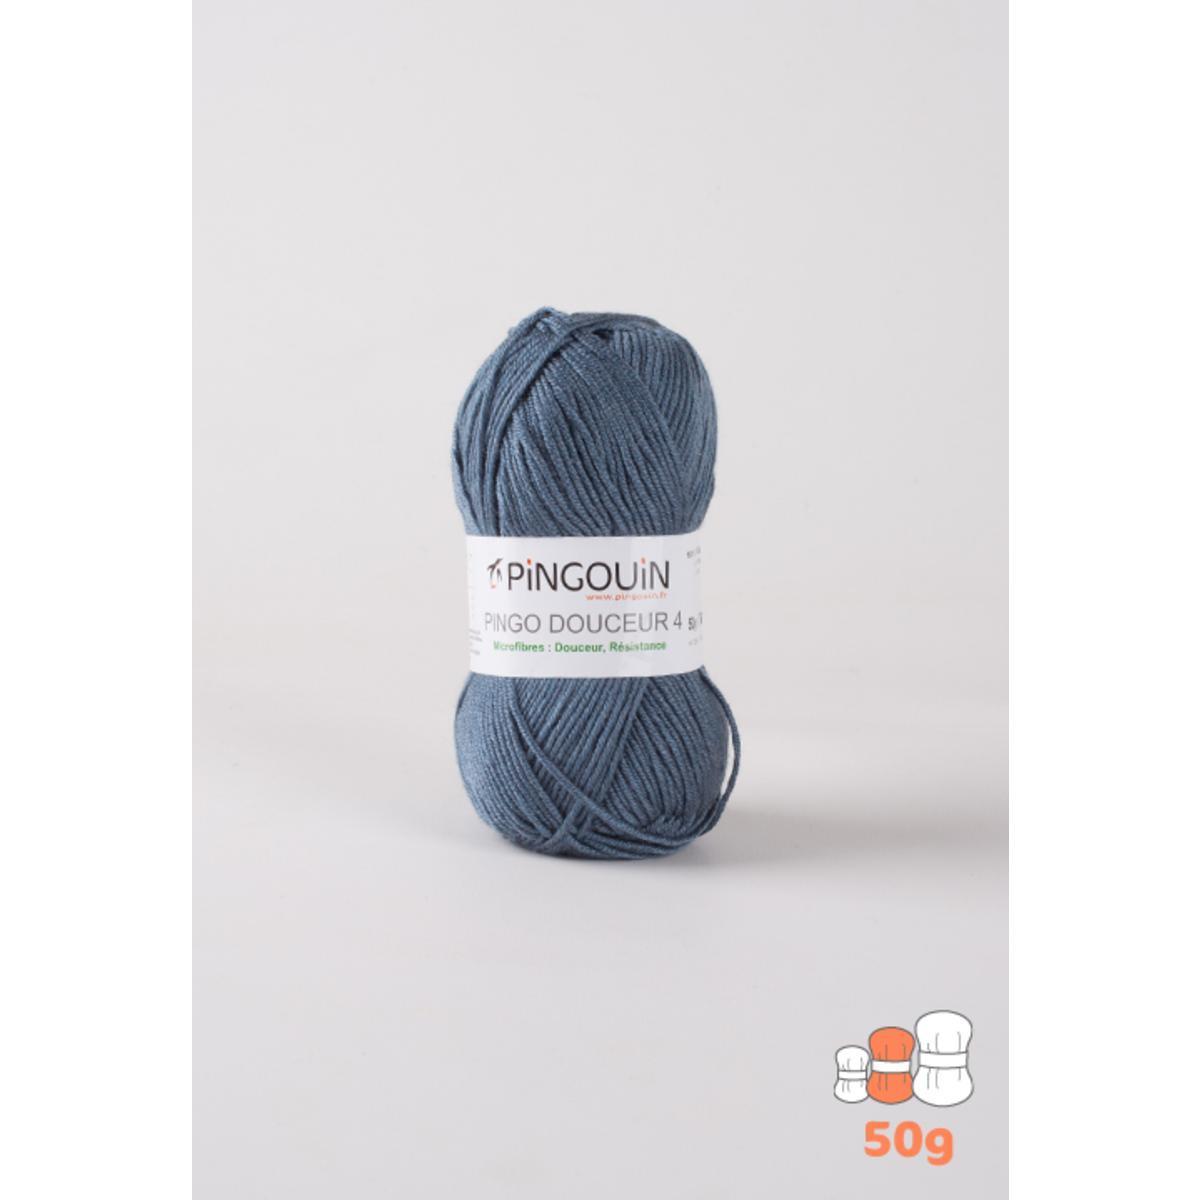 Pelote acrylique Pingo Douceur 4 - 138 m - Bleu - PINGOUIN